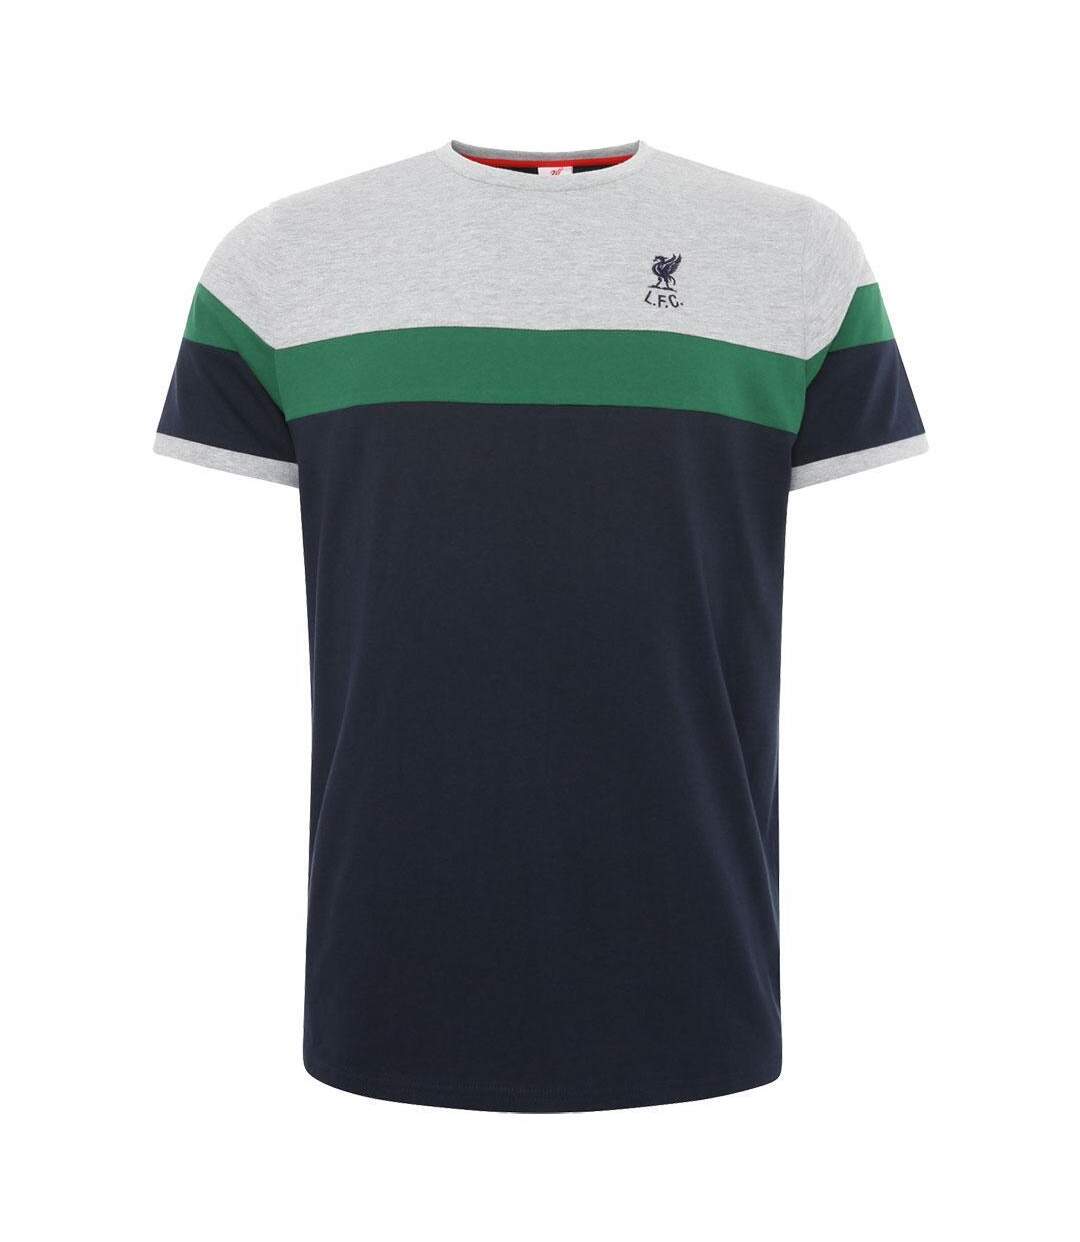 Liverpool FC - T-shirt - Homme (Bleu marine / Vert / Gris) - UTTA7880